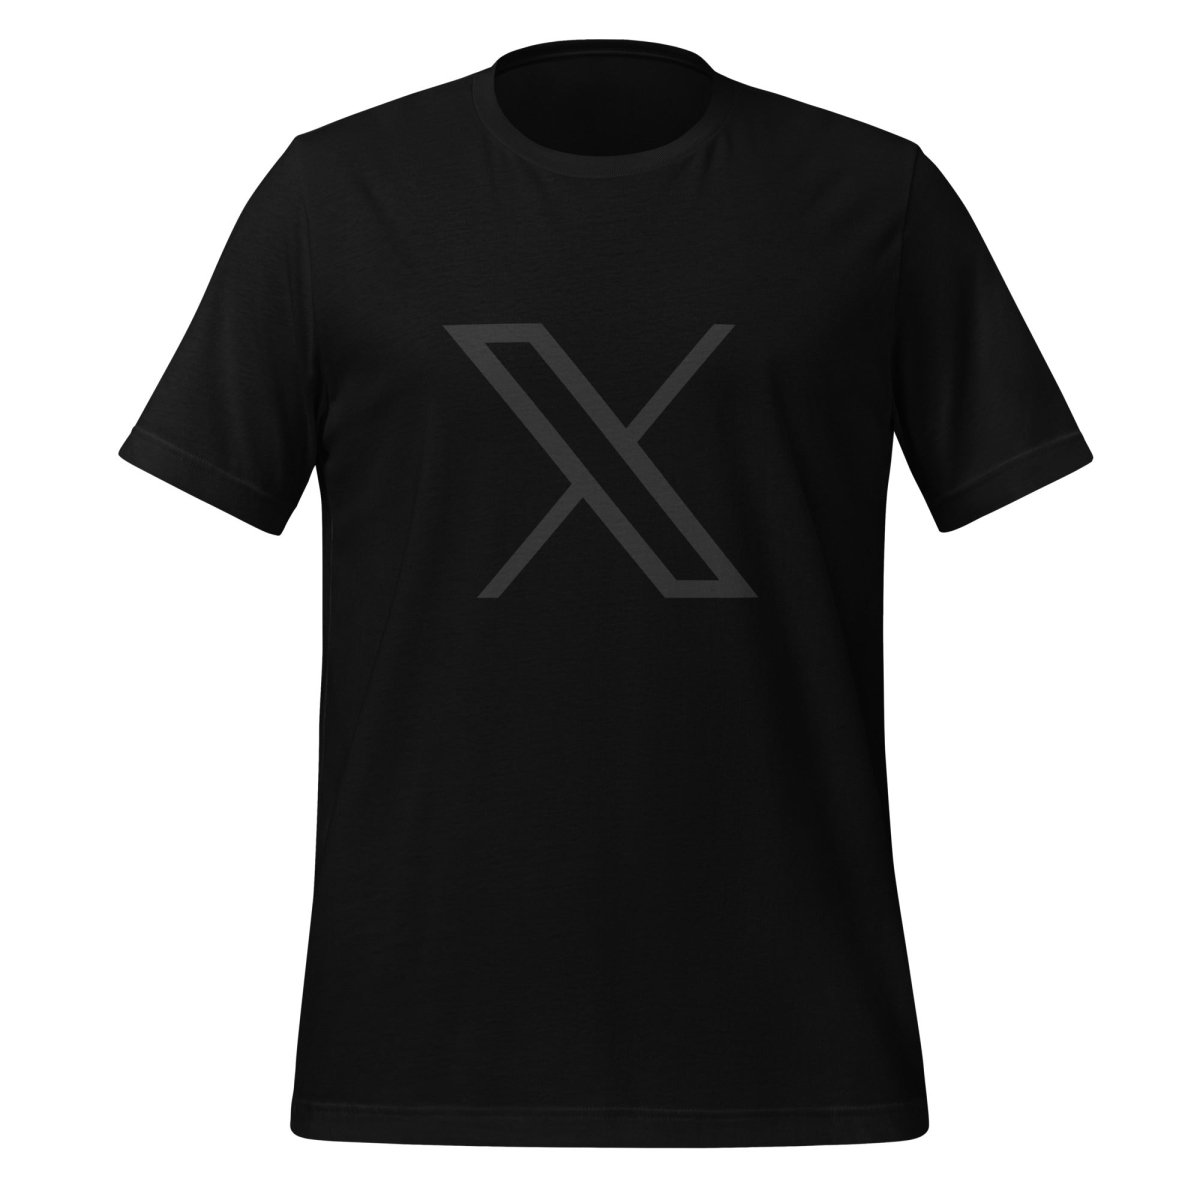 Twitter X Black Logo T - Shirt (unisex) - Black - AI Store